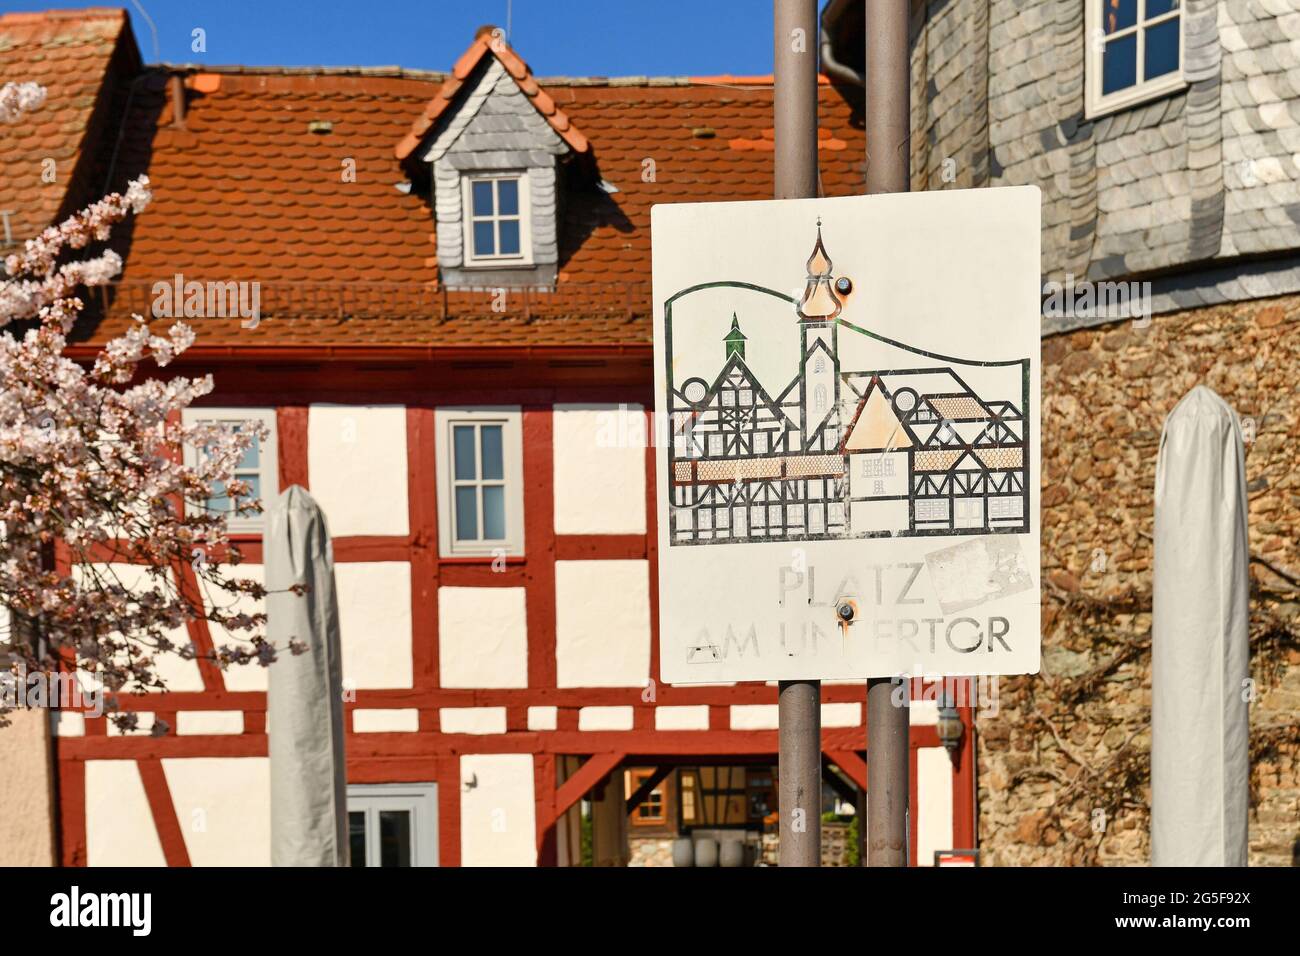 Hofheim, Deutschland - März 2021: Schild für den alten historischen Platz 'Platz am Untertor' an der alten Stadtmauer von Hofheim Stockfoto